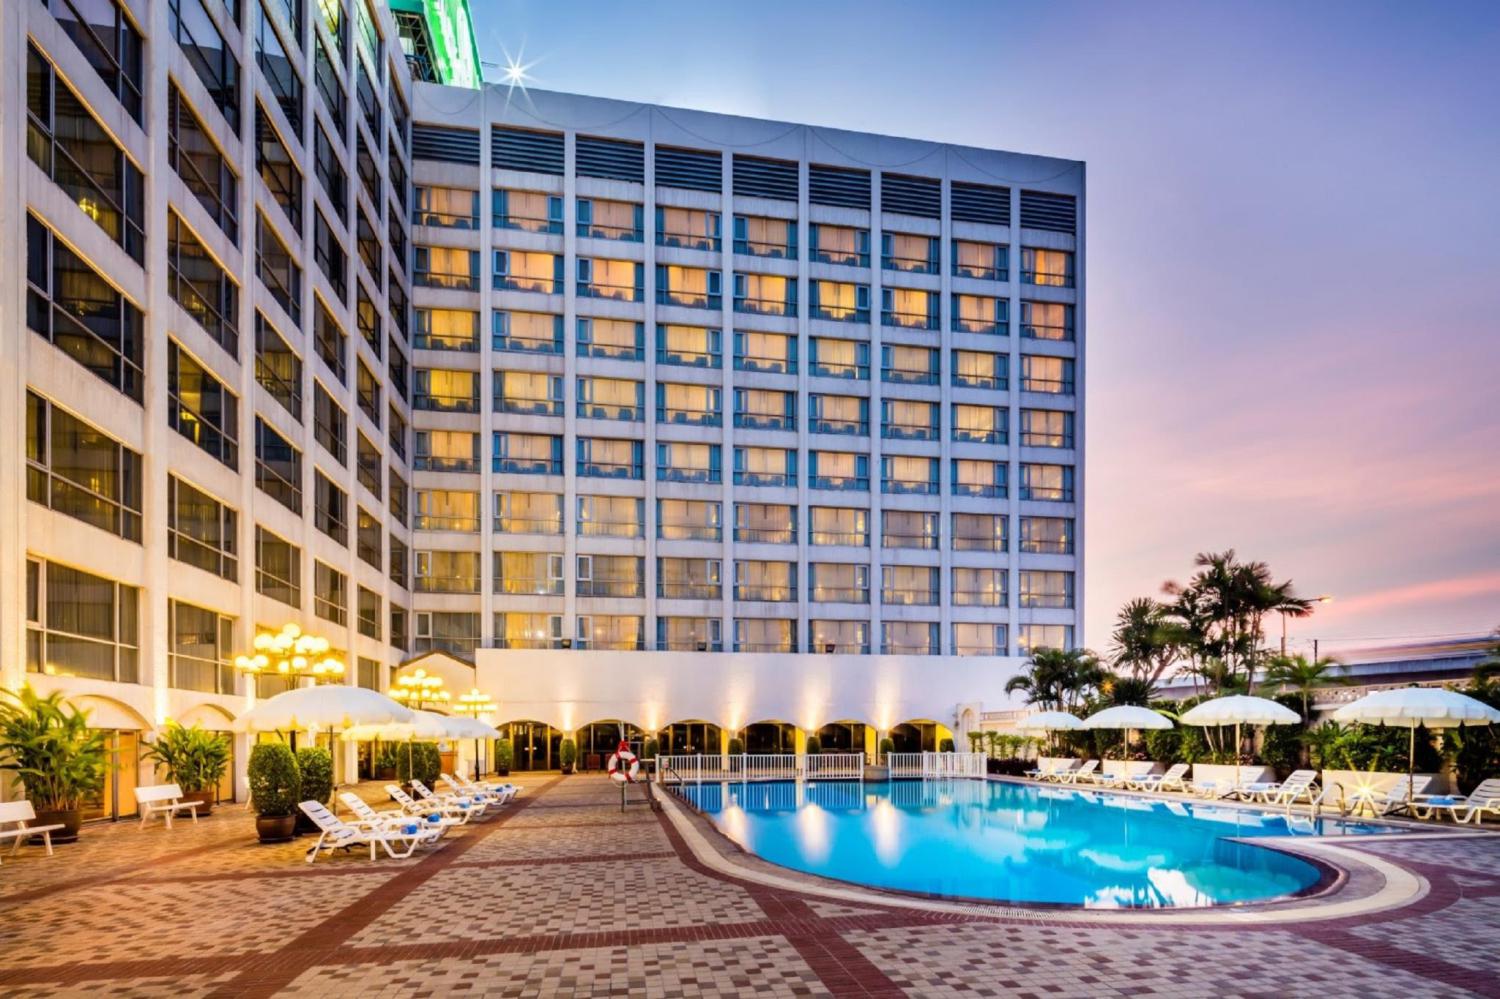 Bangkok Palace Hotel - Image 0